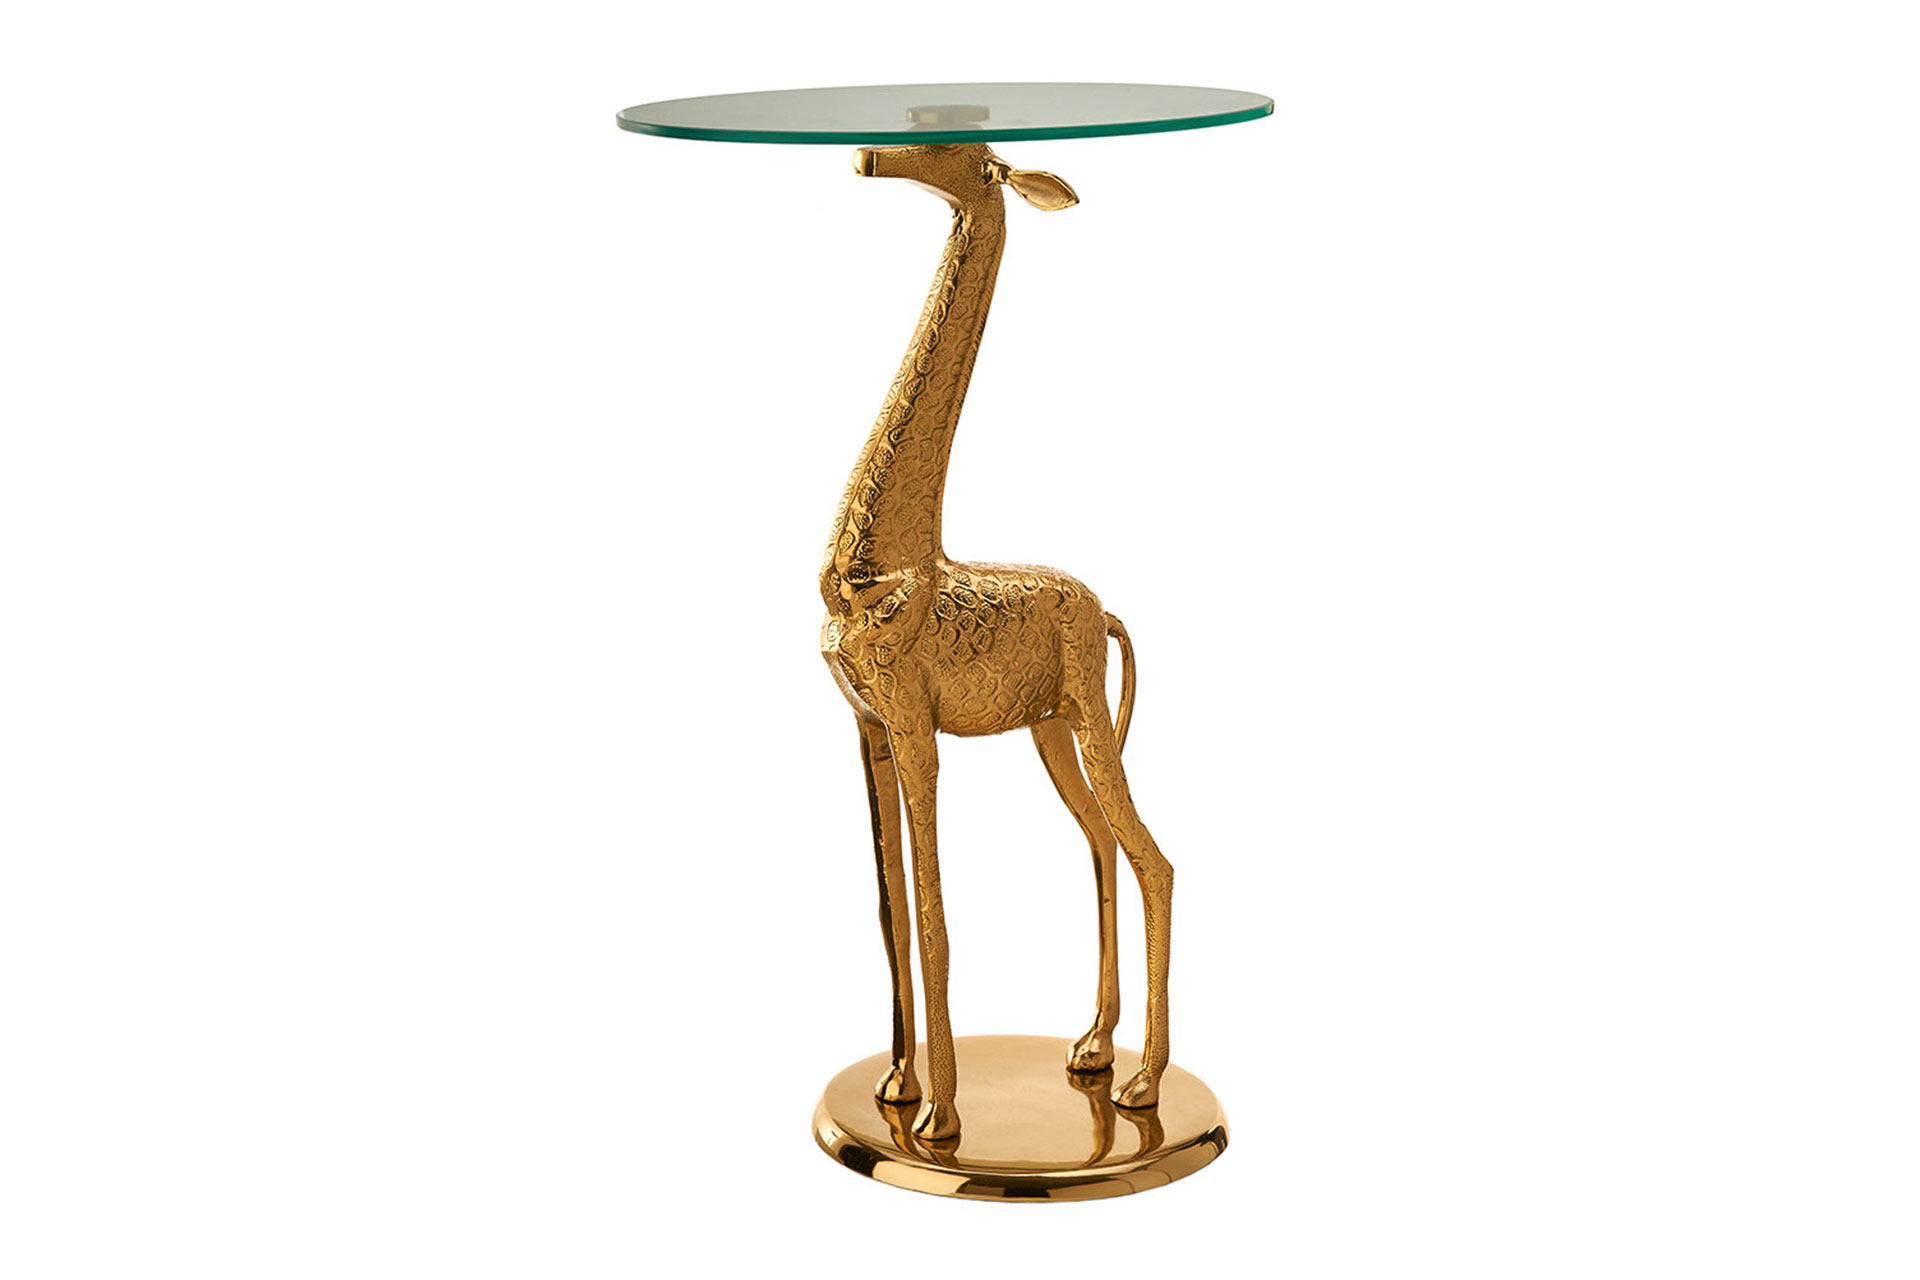 Die Glasplatte des Beistelltisches von Pols Potten wird von einer vergoldeten Giraffe auf dem Kopf balanciert. polspotten.nl​​​​​​​